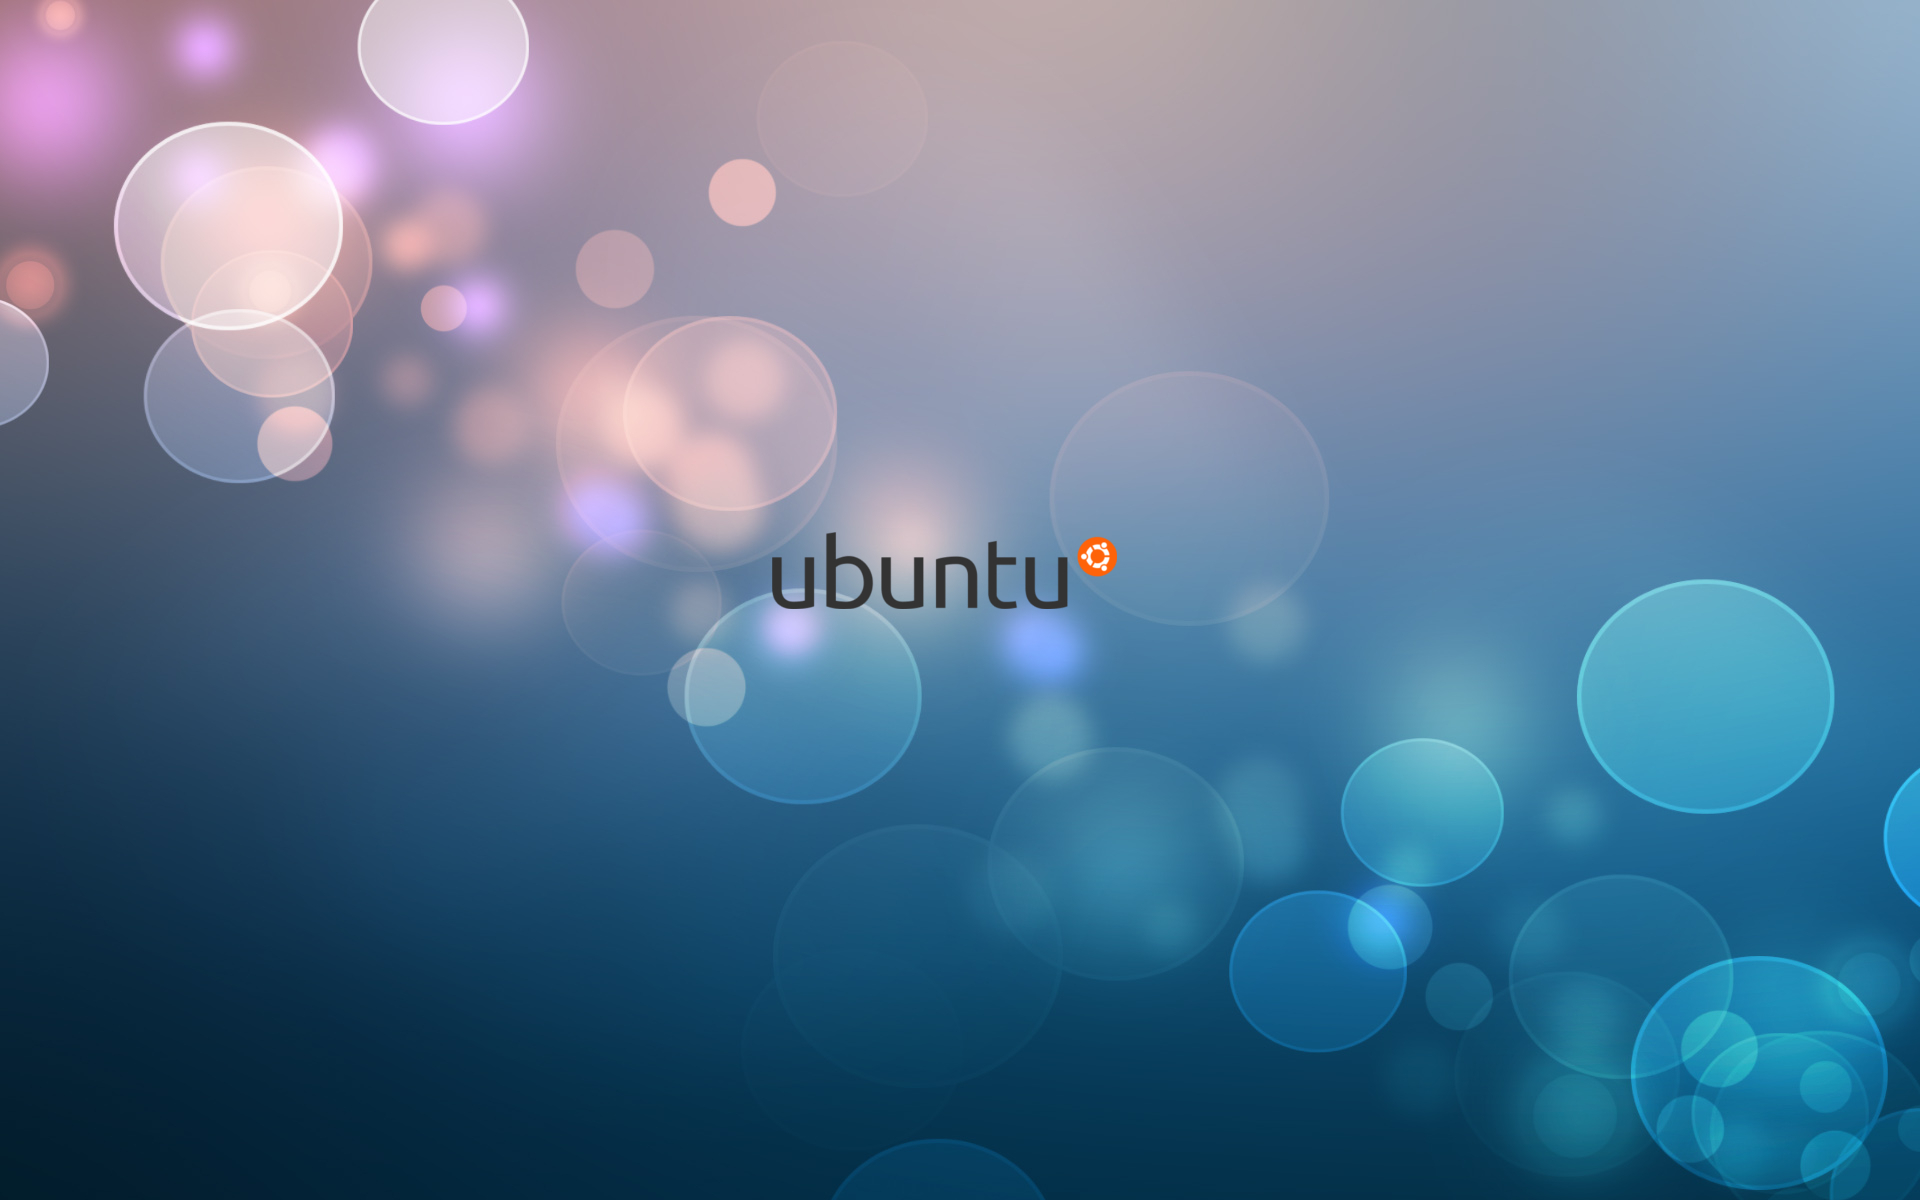 ubuntu wallpaper herunterladen,blau,himmel,licht,türkis,design